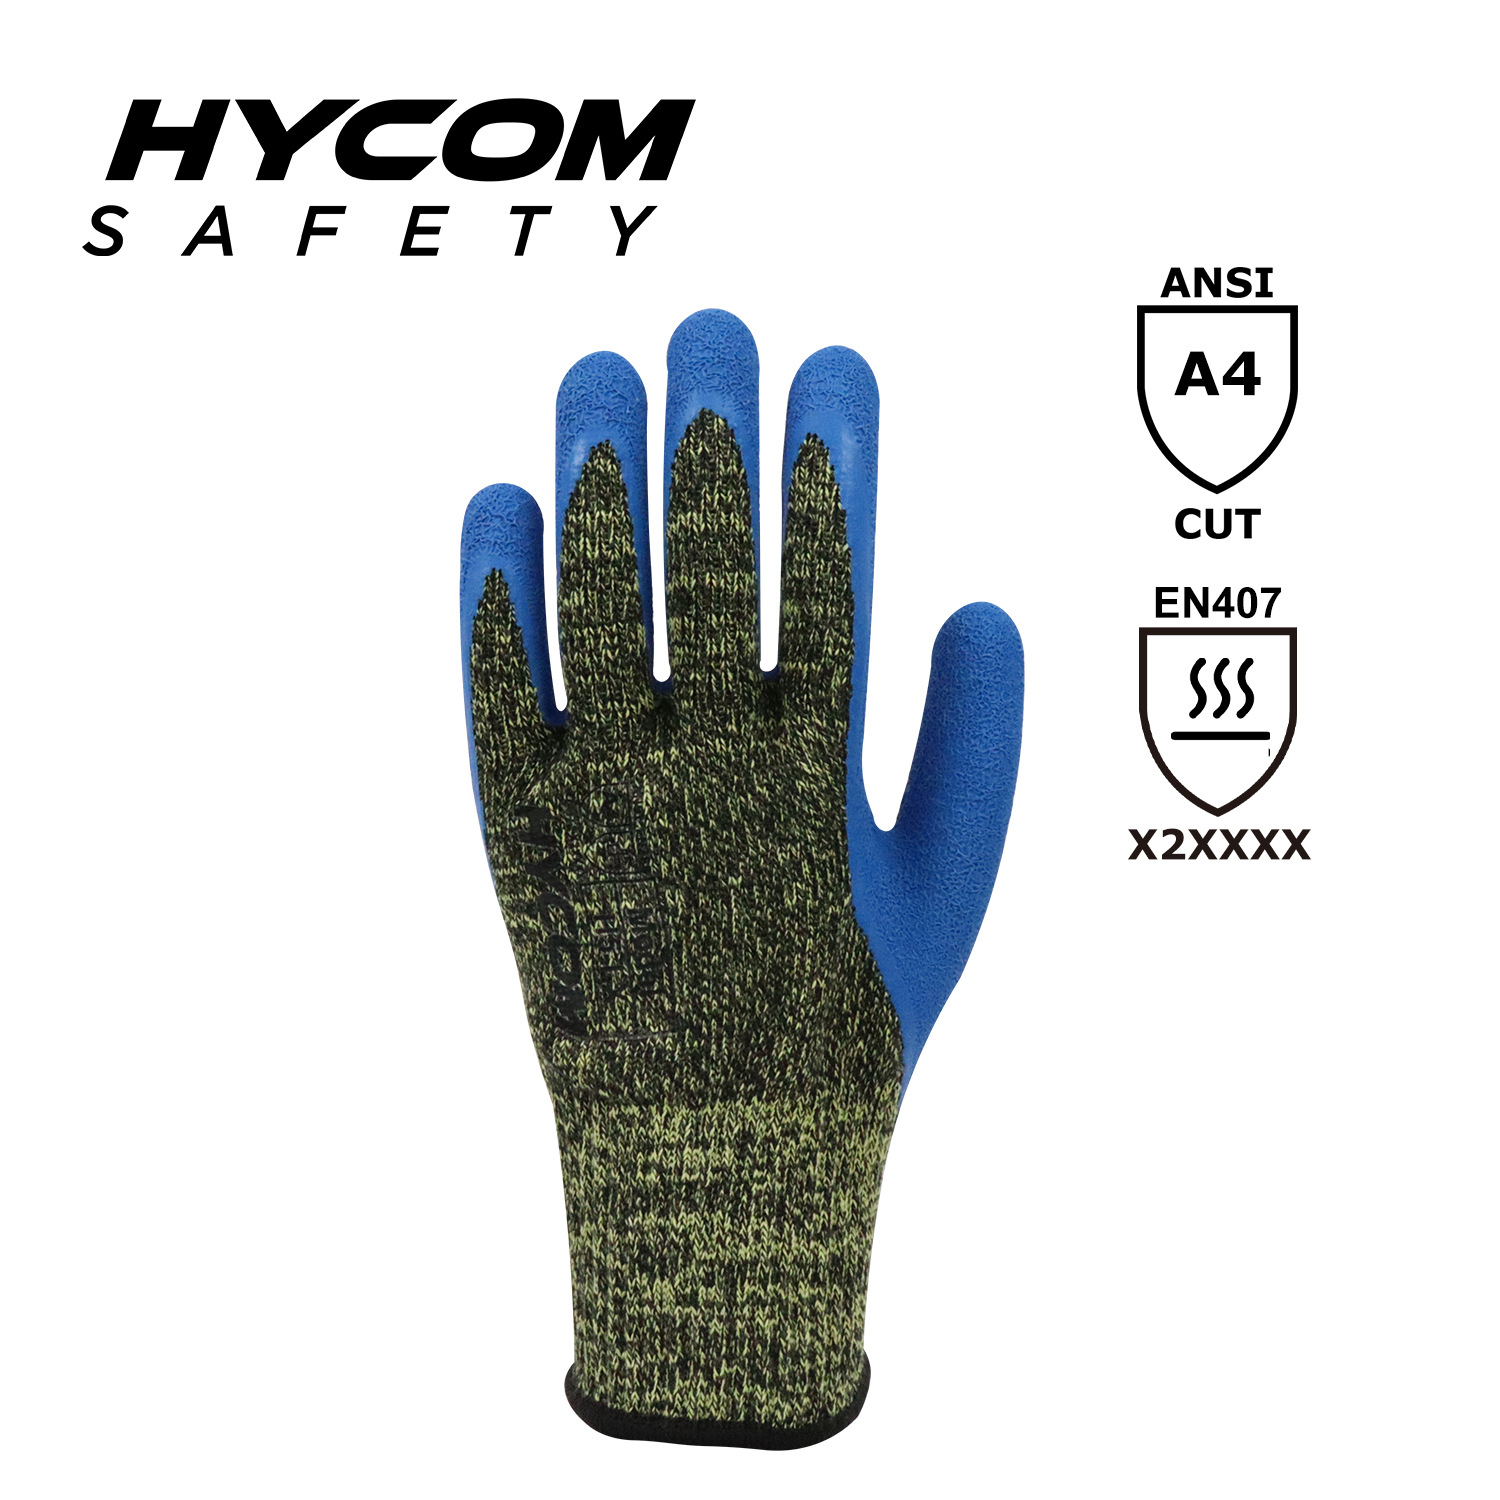 HYCOM Contacto de aramida 10G alta temperatura 250°C/480F resistente al corte con guante de látex arrugado